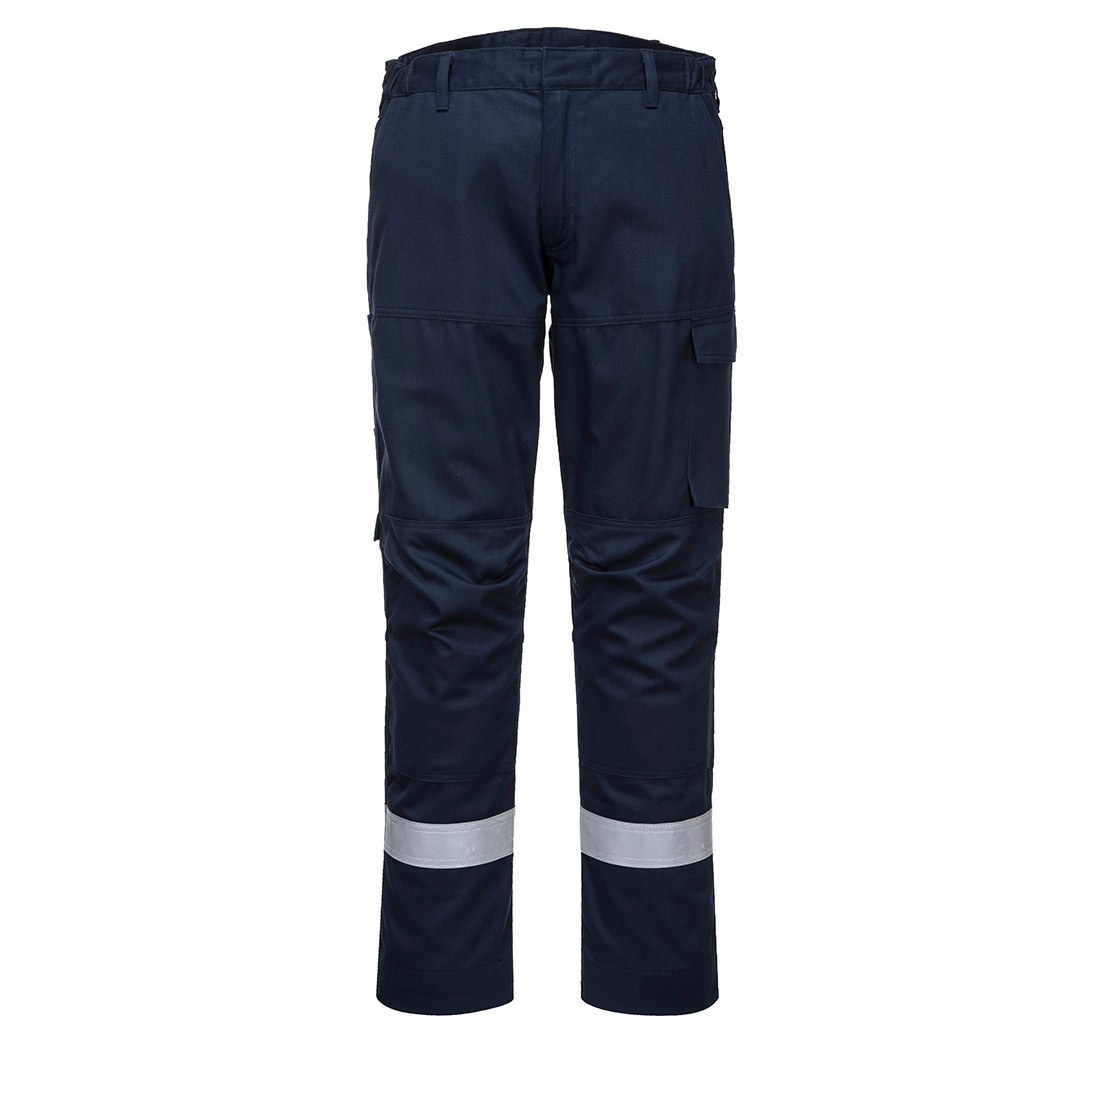 Pantalon Ultra Bizflame - Les vêtements de protection